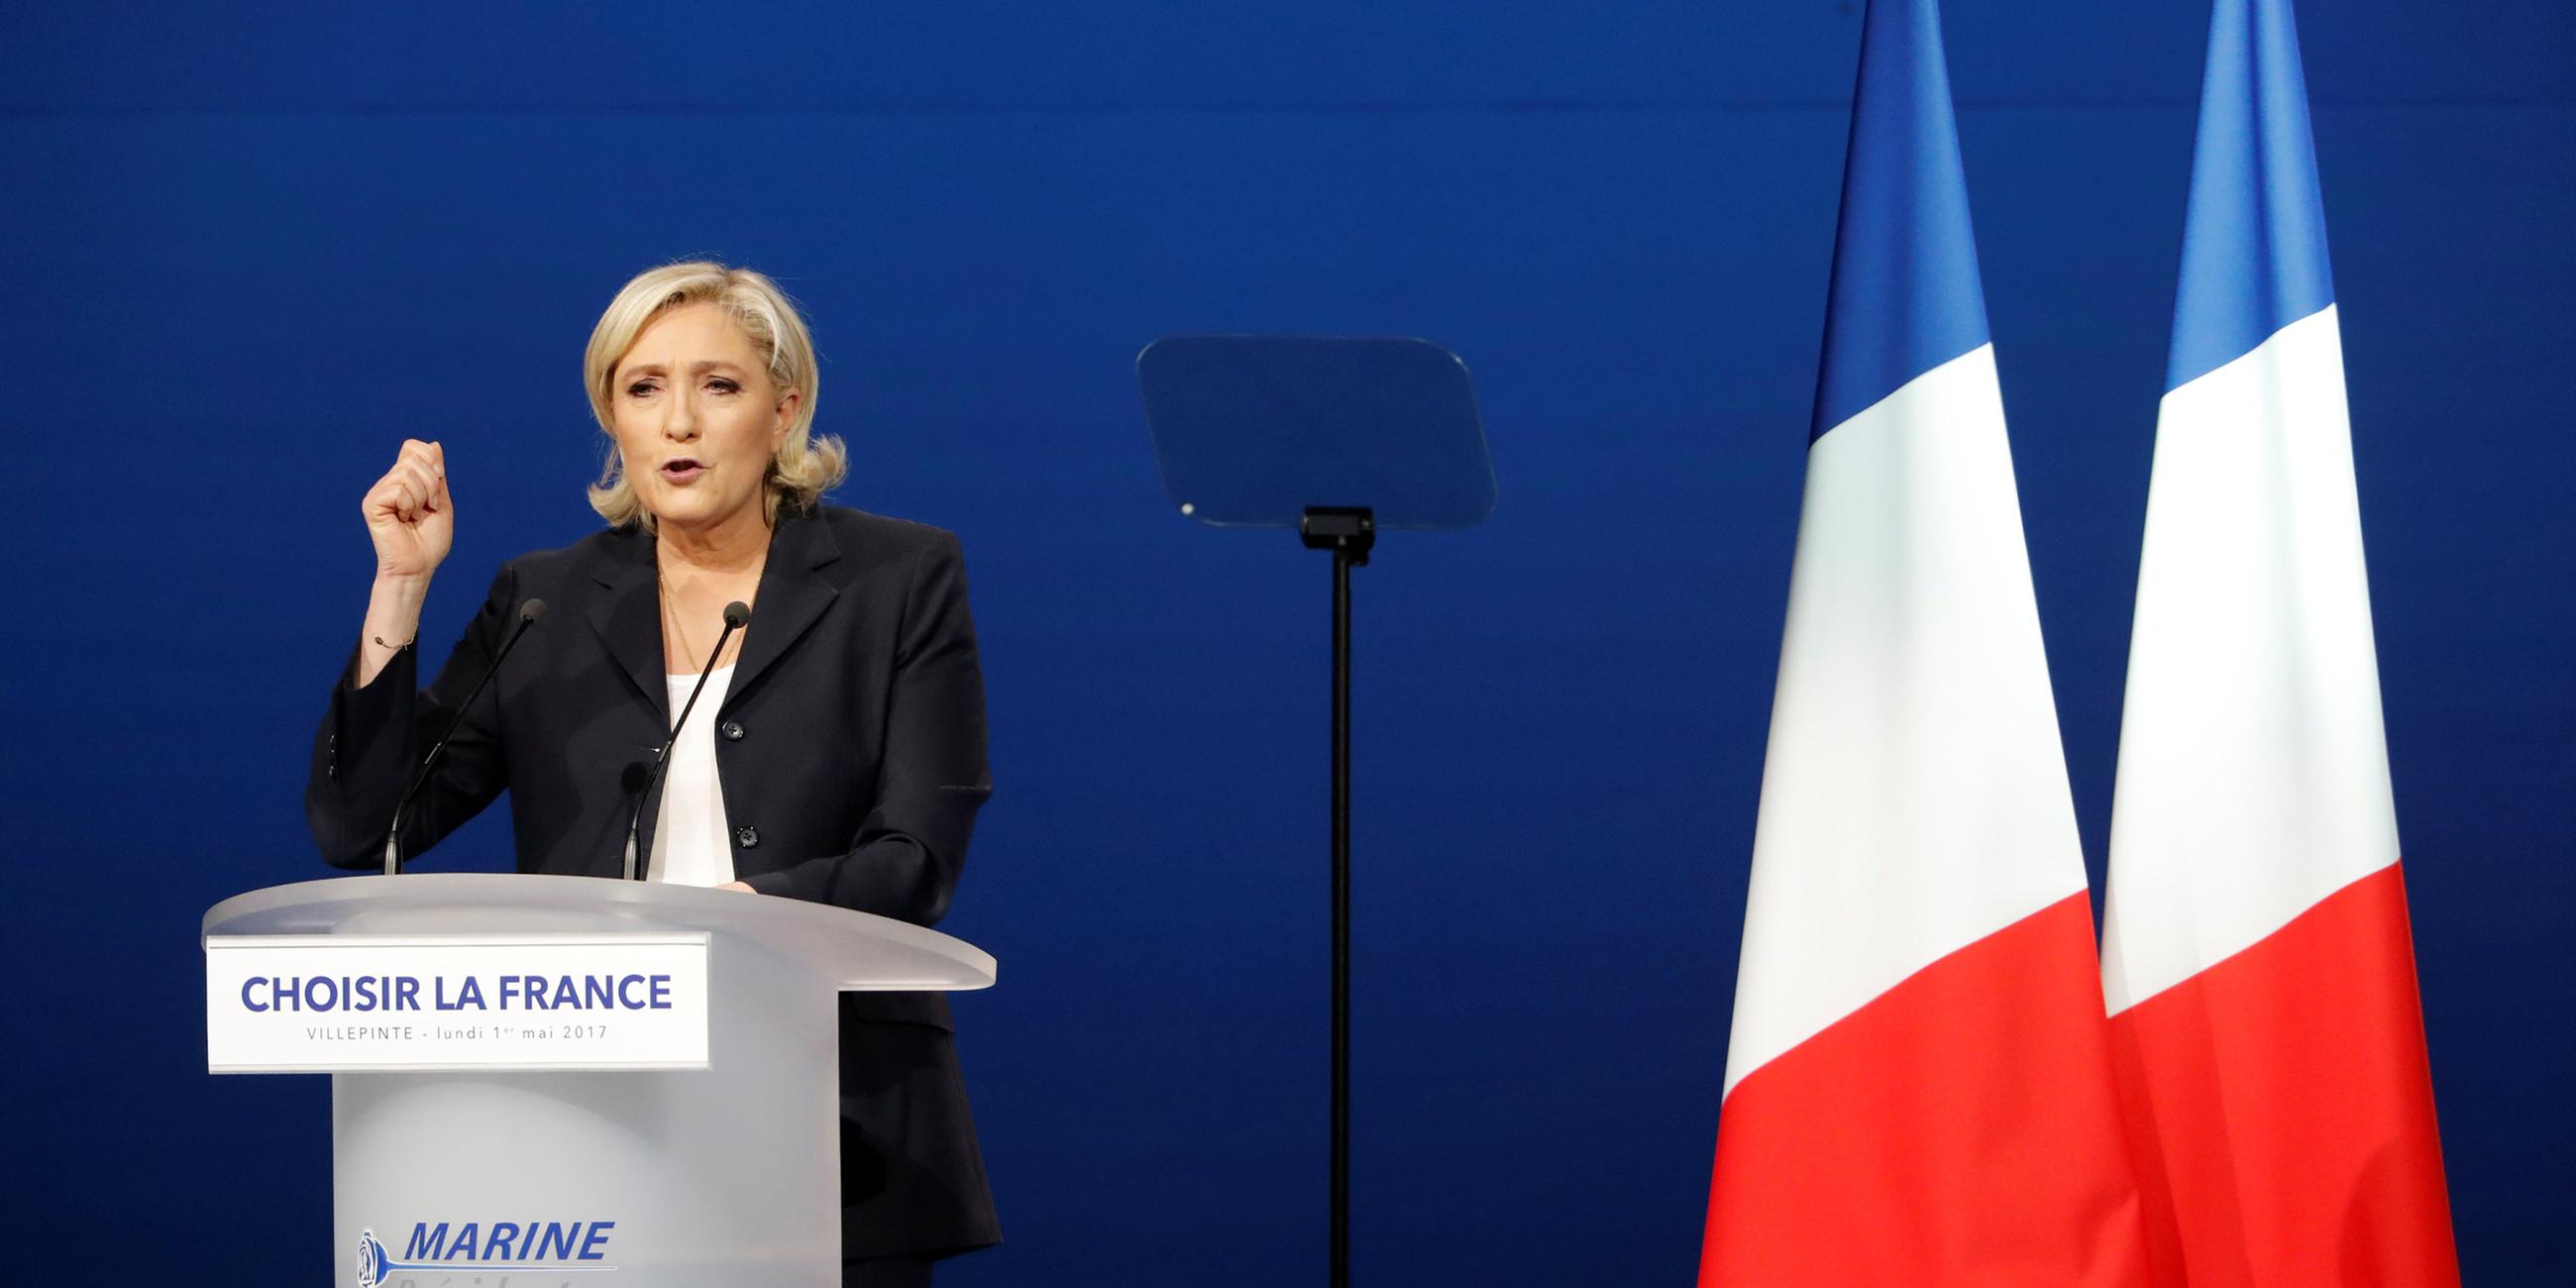     Marine Le Pen spricht bei einer Wahlkampfveranstaltung 